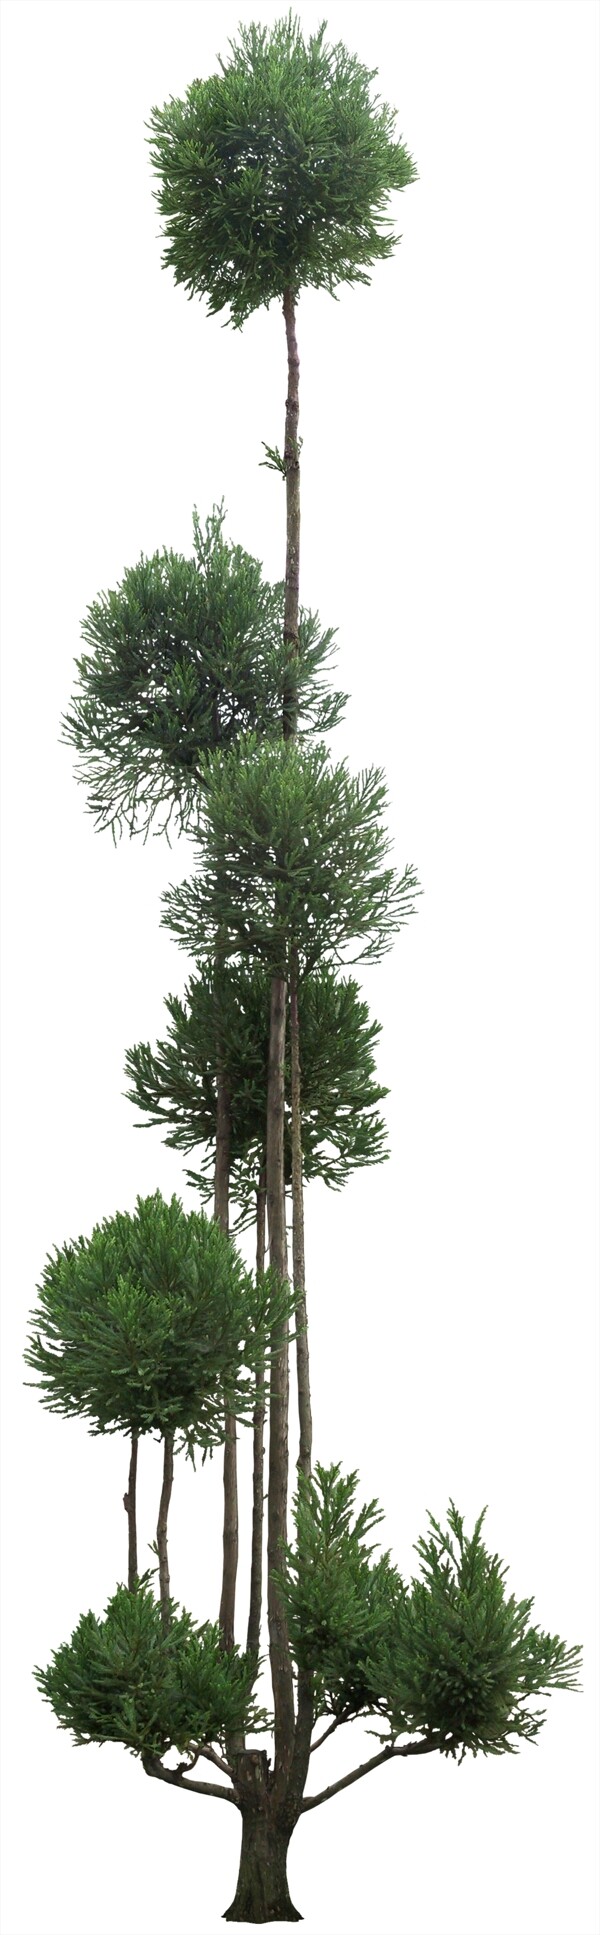 柳杉造型树园林景观效果图